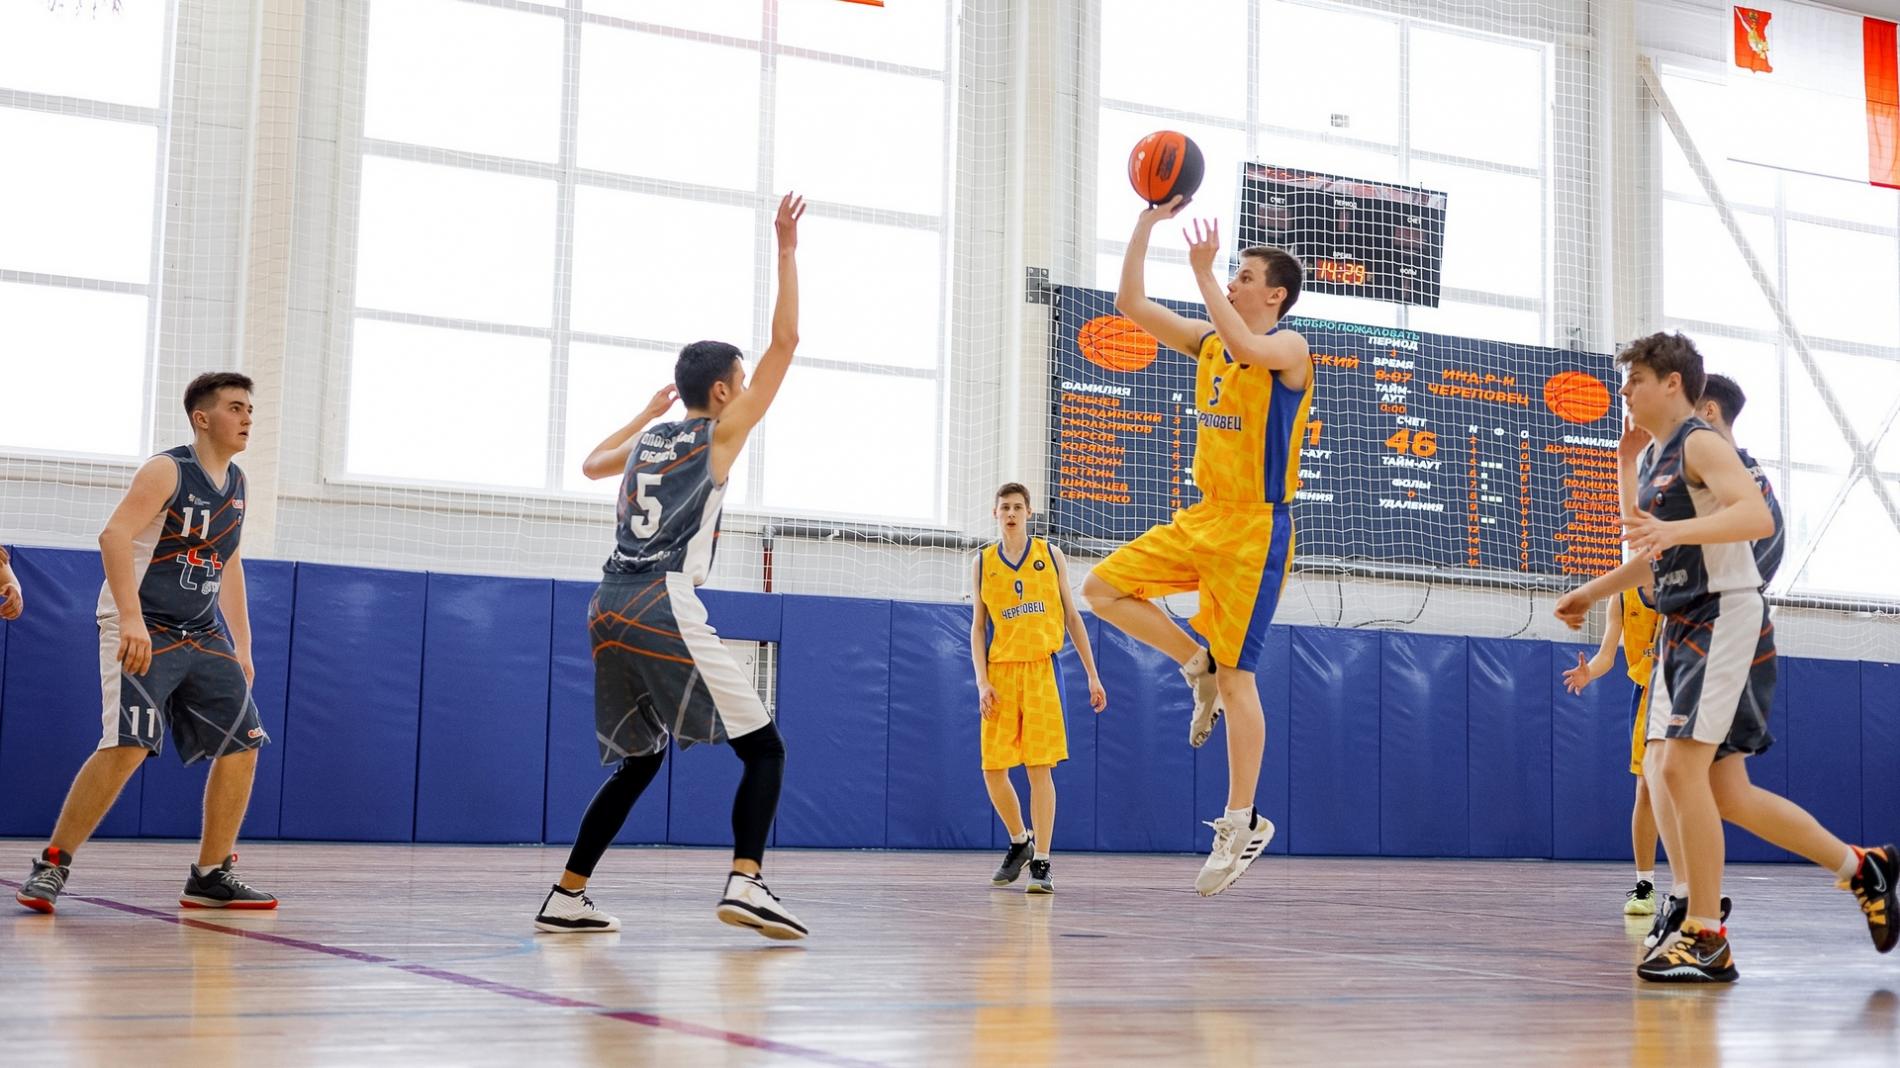 Юноши из Вологды и девушки из Шексны победили на областном этапе школьной баскетбольной лиги «КЭС-баскет».